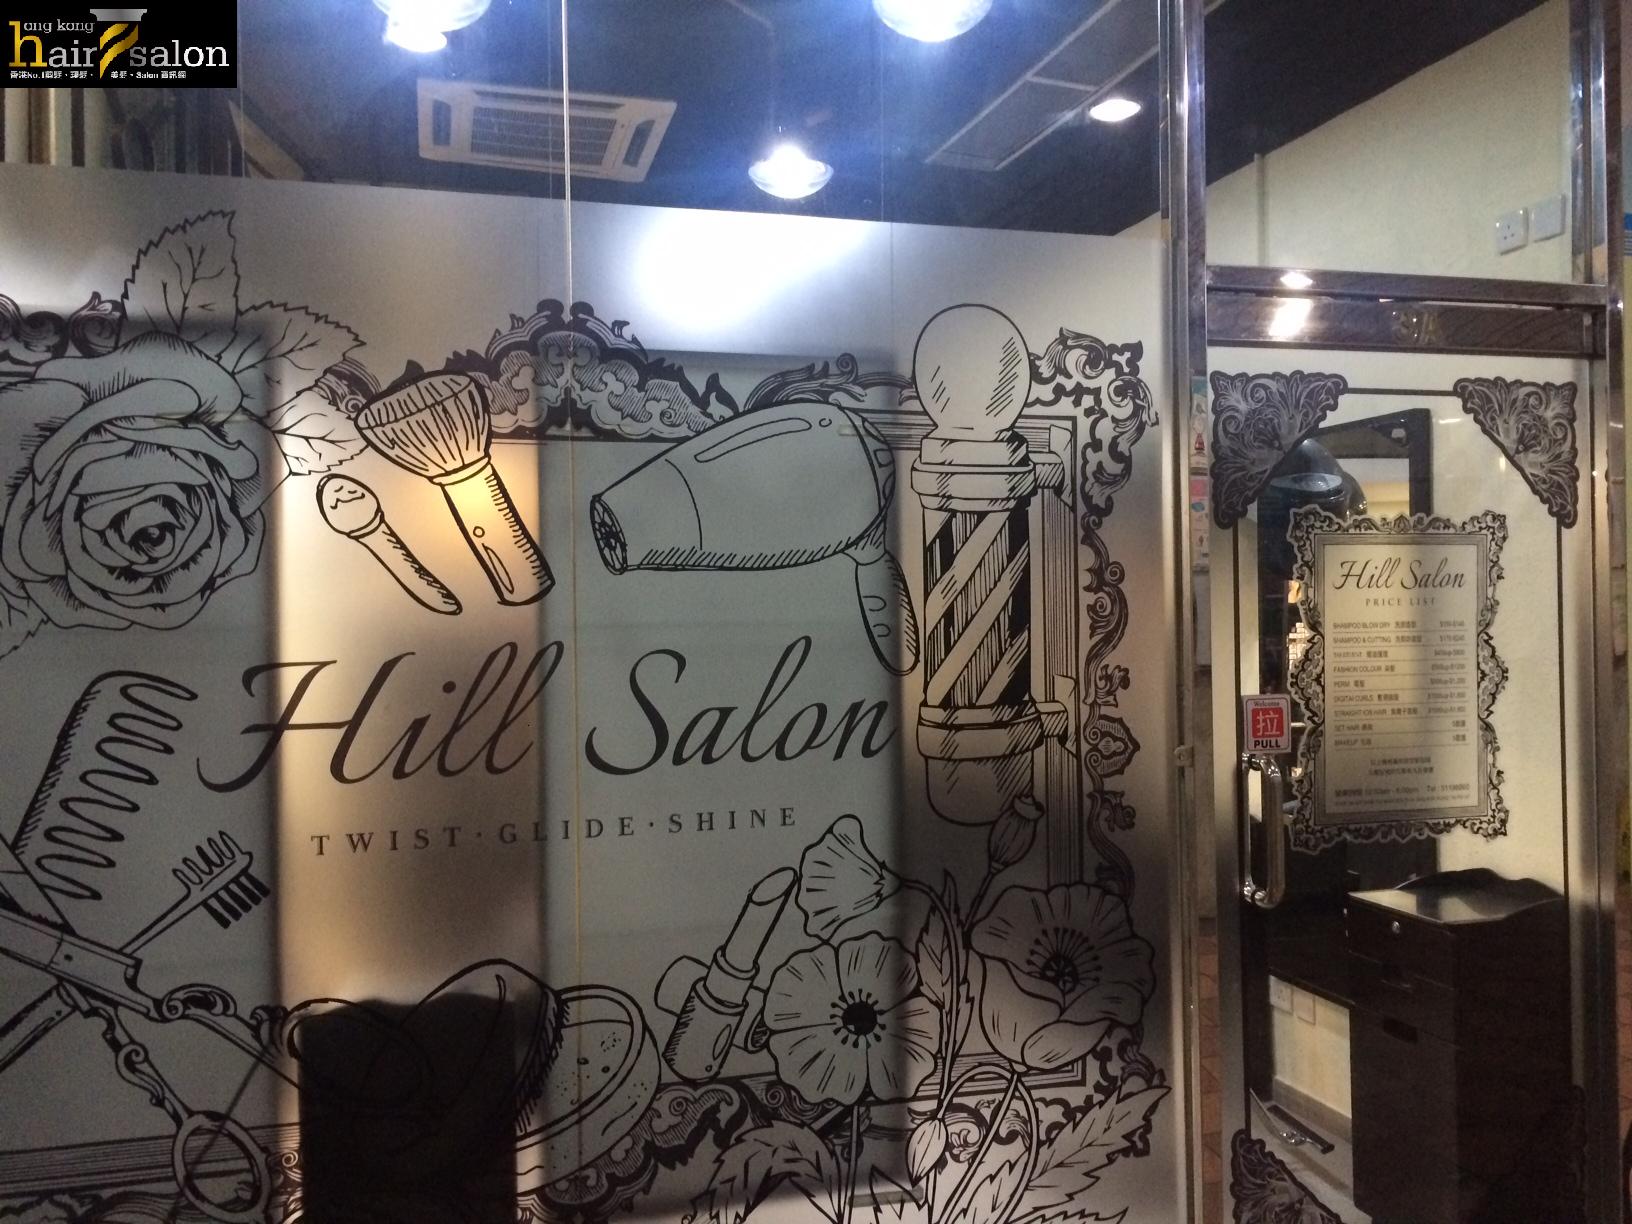 髮型屋: Hill Salon